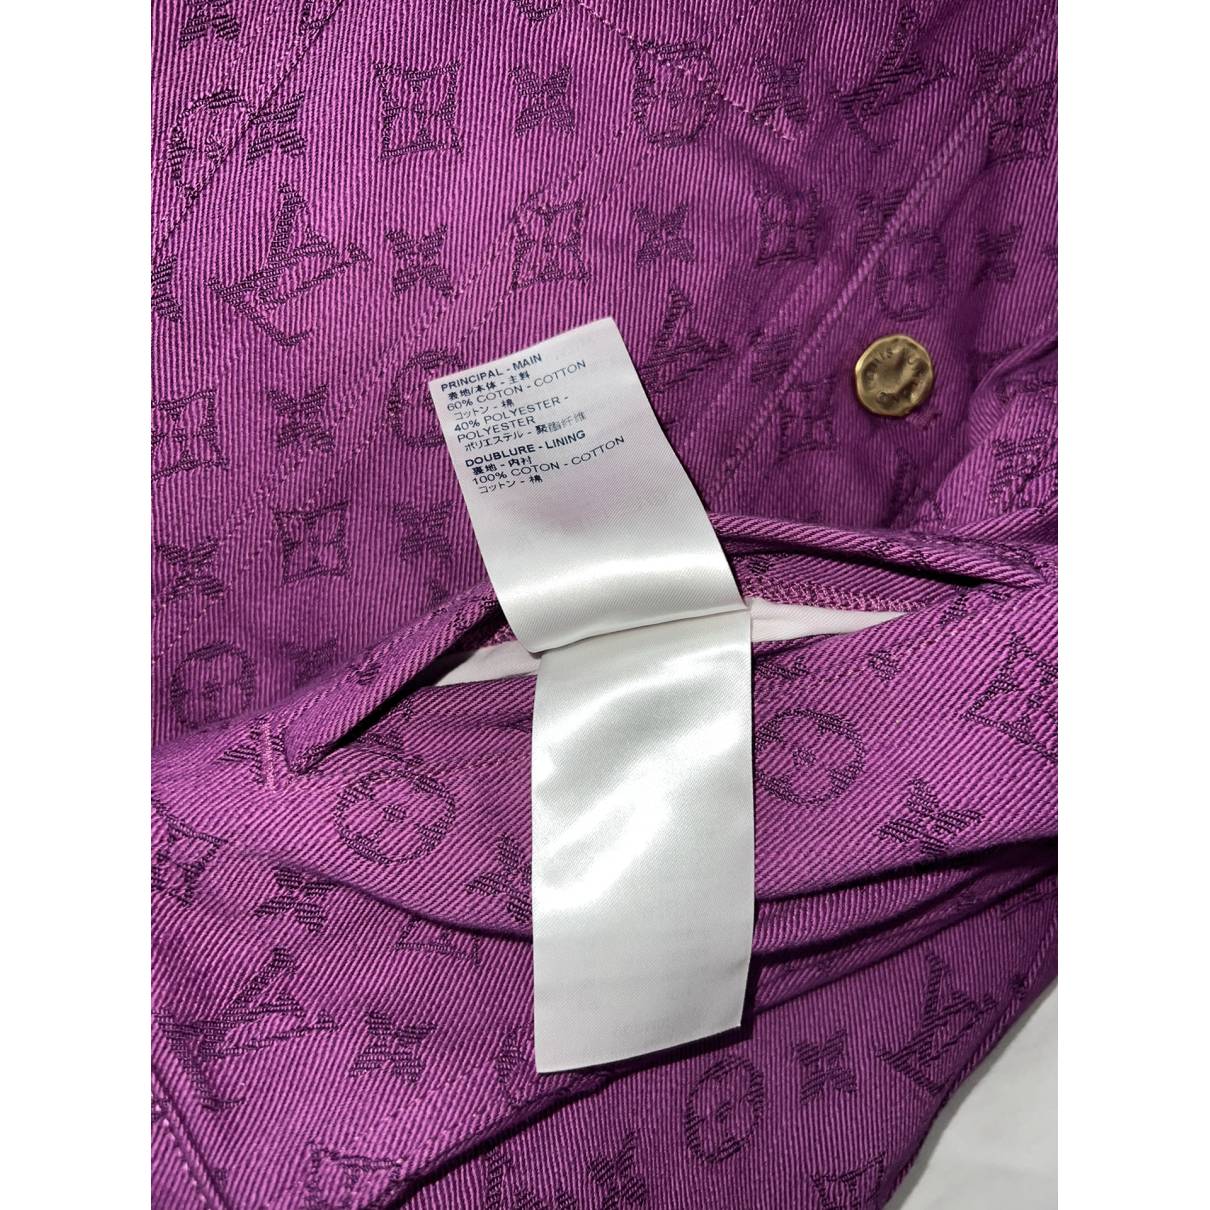 Louis Vuitton Blue Monogram Denim Button Front Jacket L Louis Vuitton | The  Luxury Closet